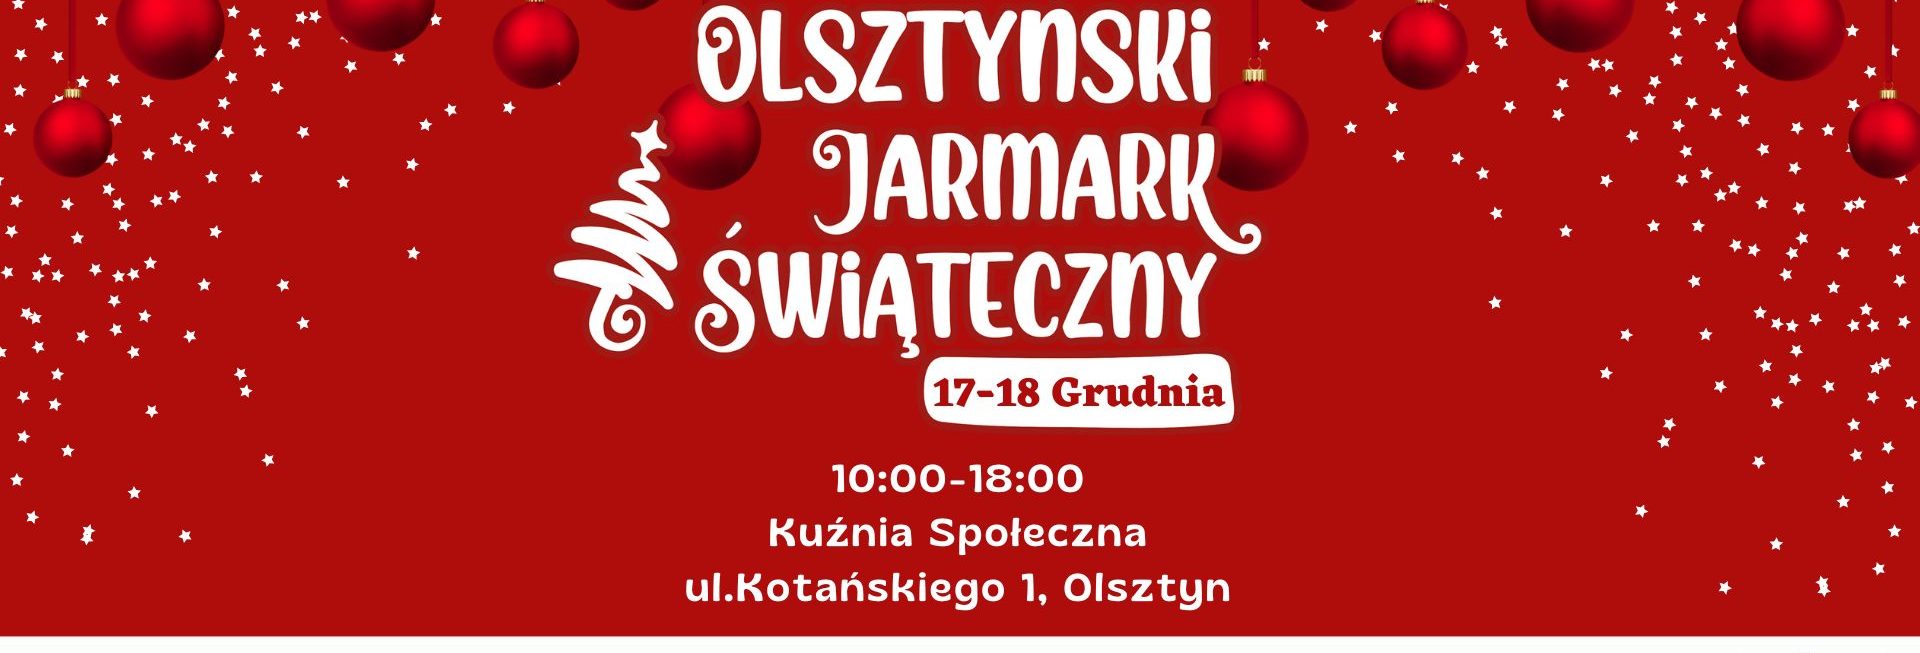 Plakat zapraszający do Kuźni Społecznej w Olsztynie na Olsztyński Jarmark Świąteczny Olsztyn 2022.